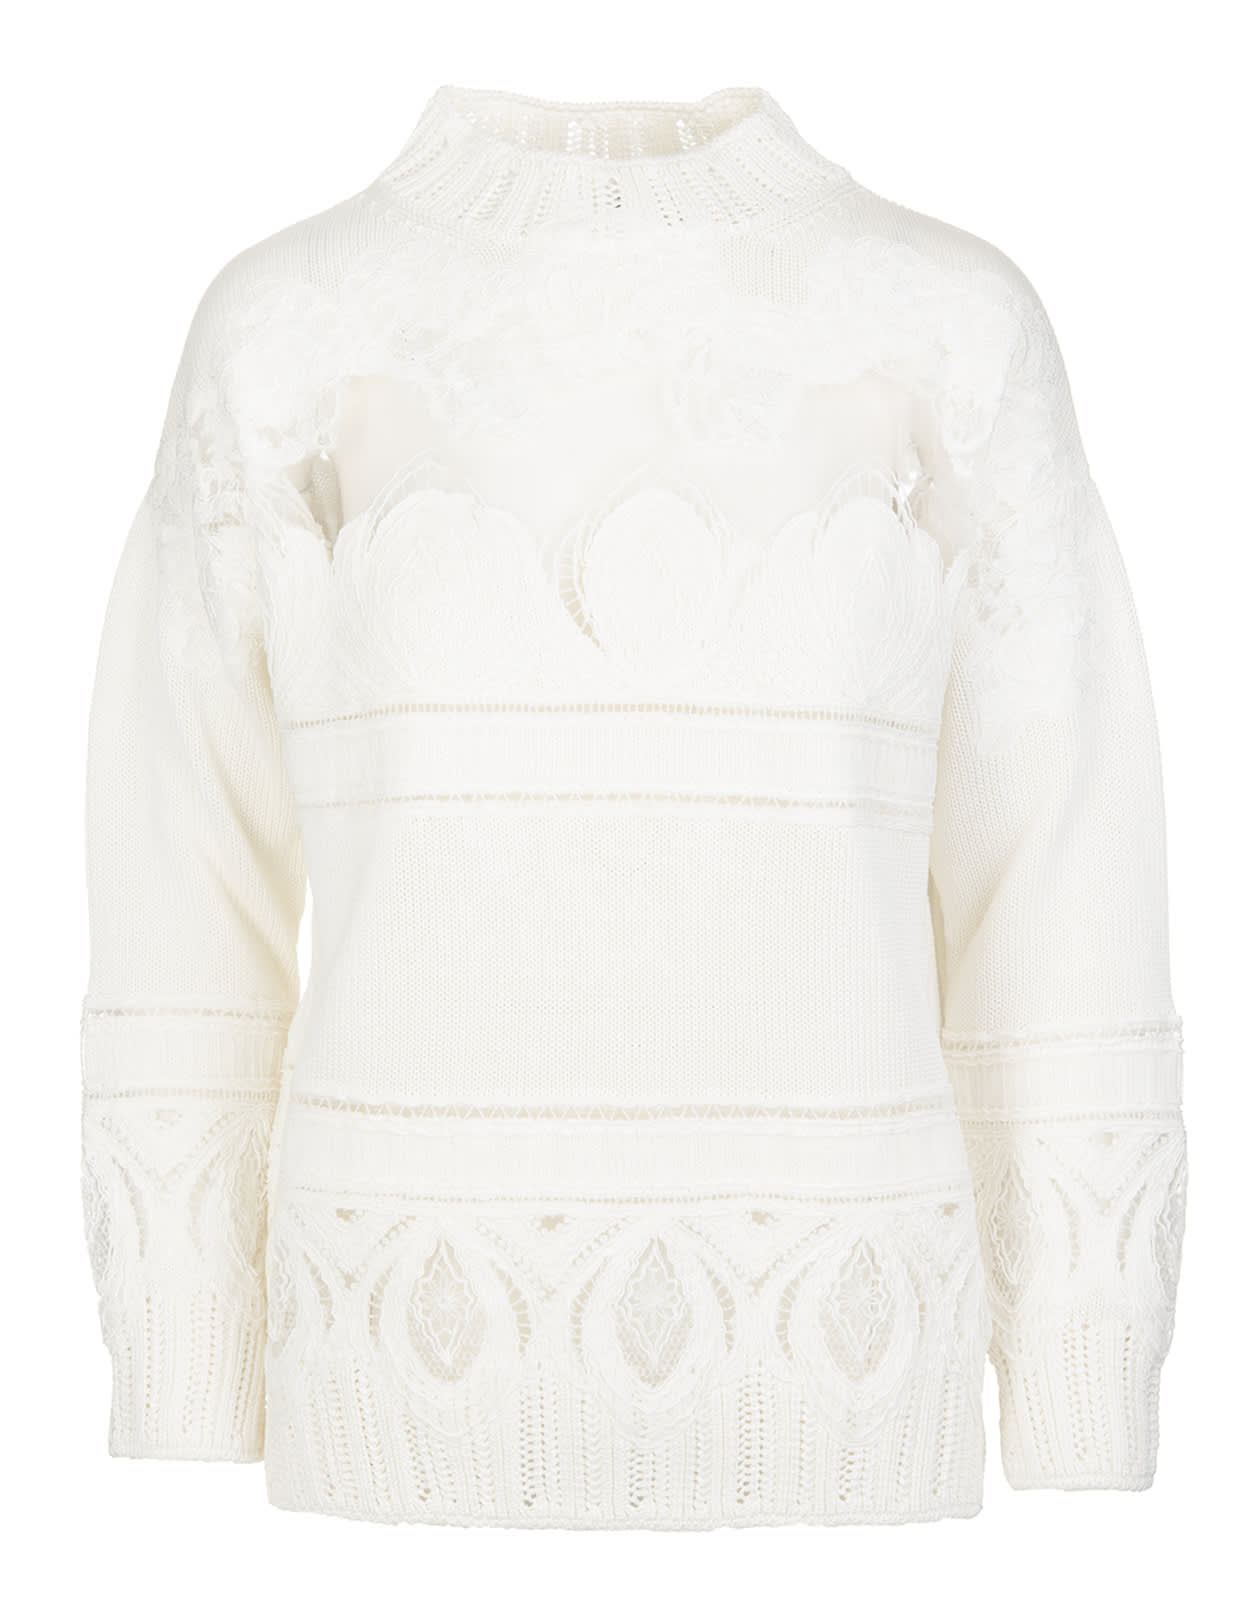 Ermanno Scervino White Half Neck Sweater In Cotton And Lace